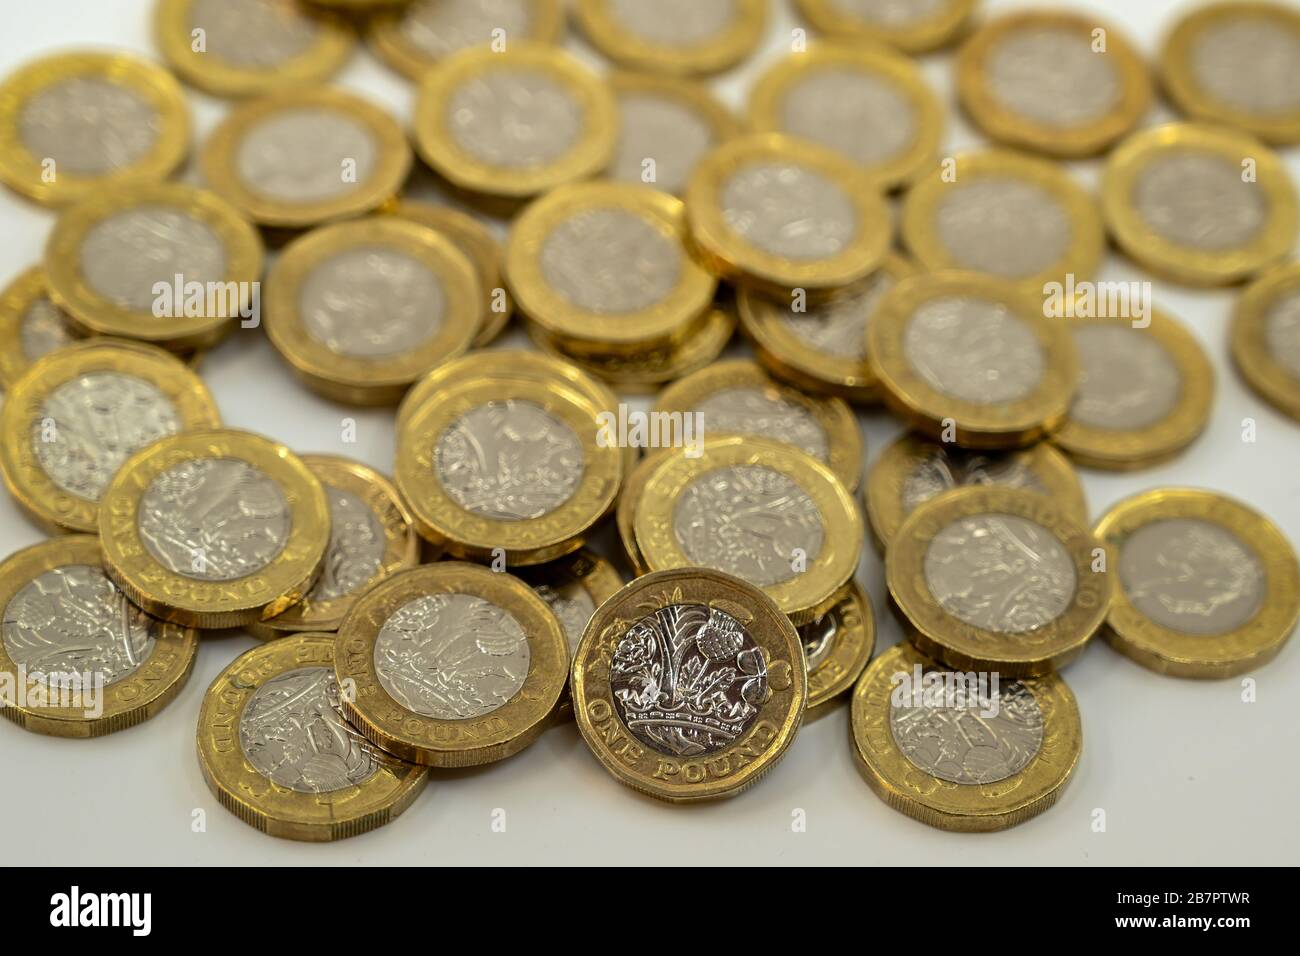 LONDON, Großbritannien - JANUAR 2020: Nahaufnahme der britischen Währung Great British Pound GBP - eine Pound-Münze, die sich auf andere Münzen stützt, verschwommen im Hintergrund Stockfoto